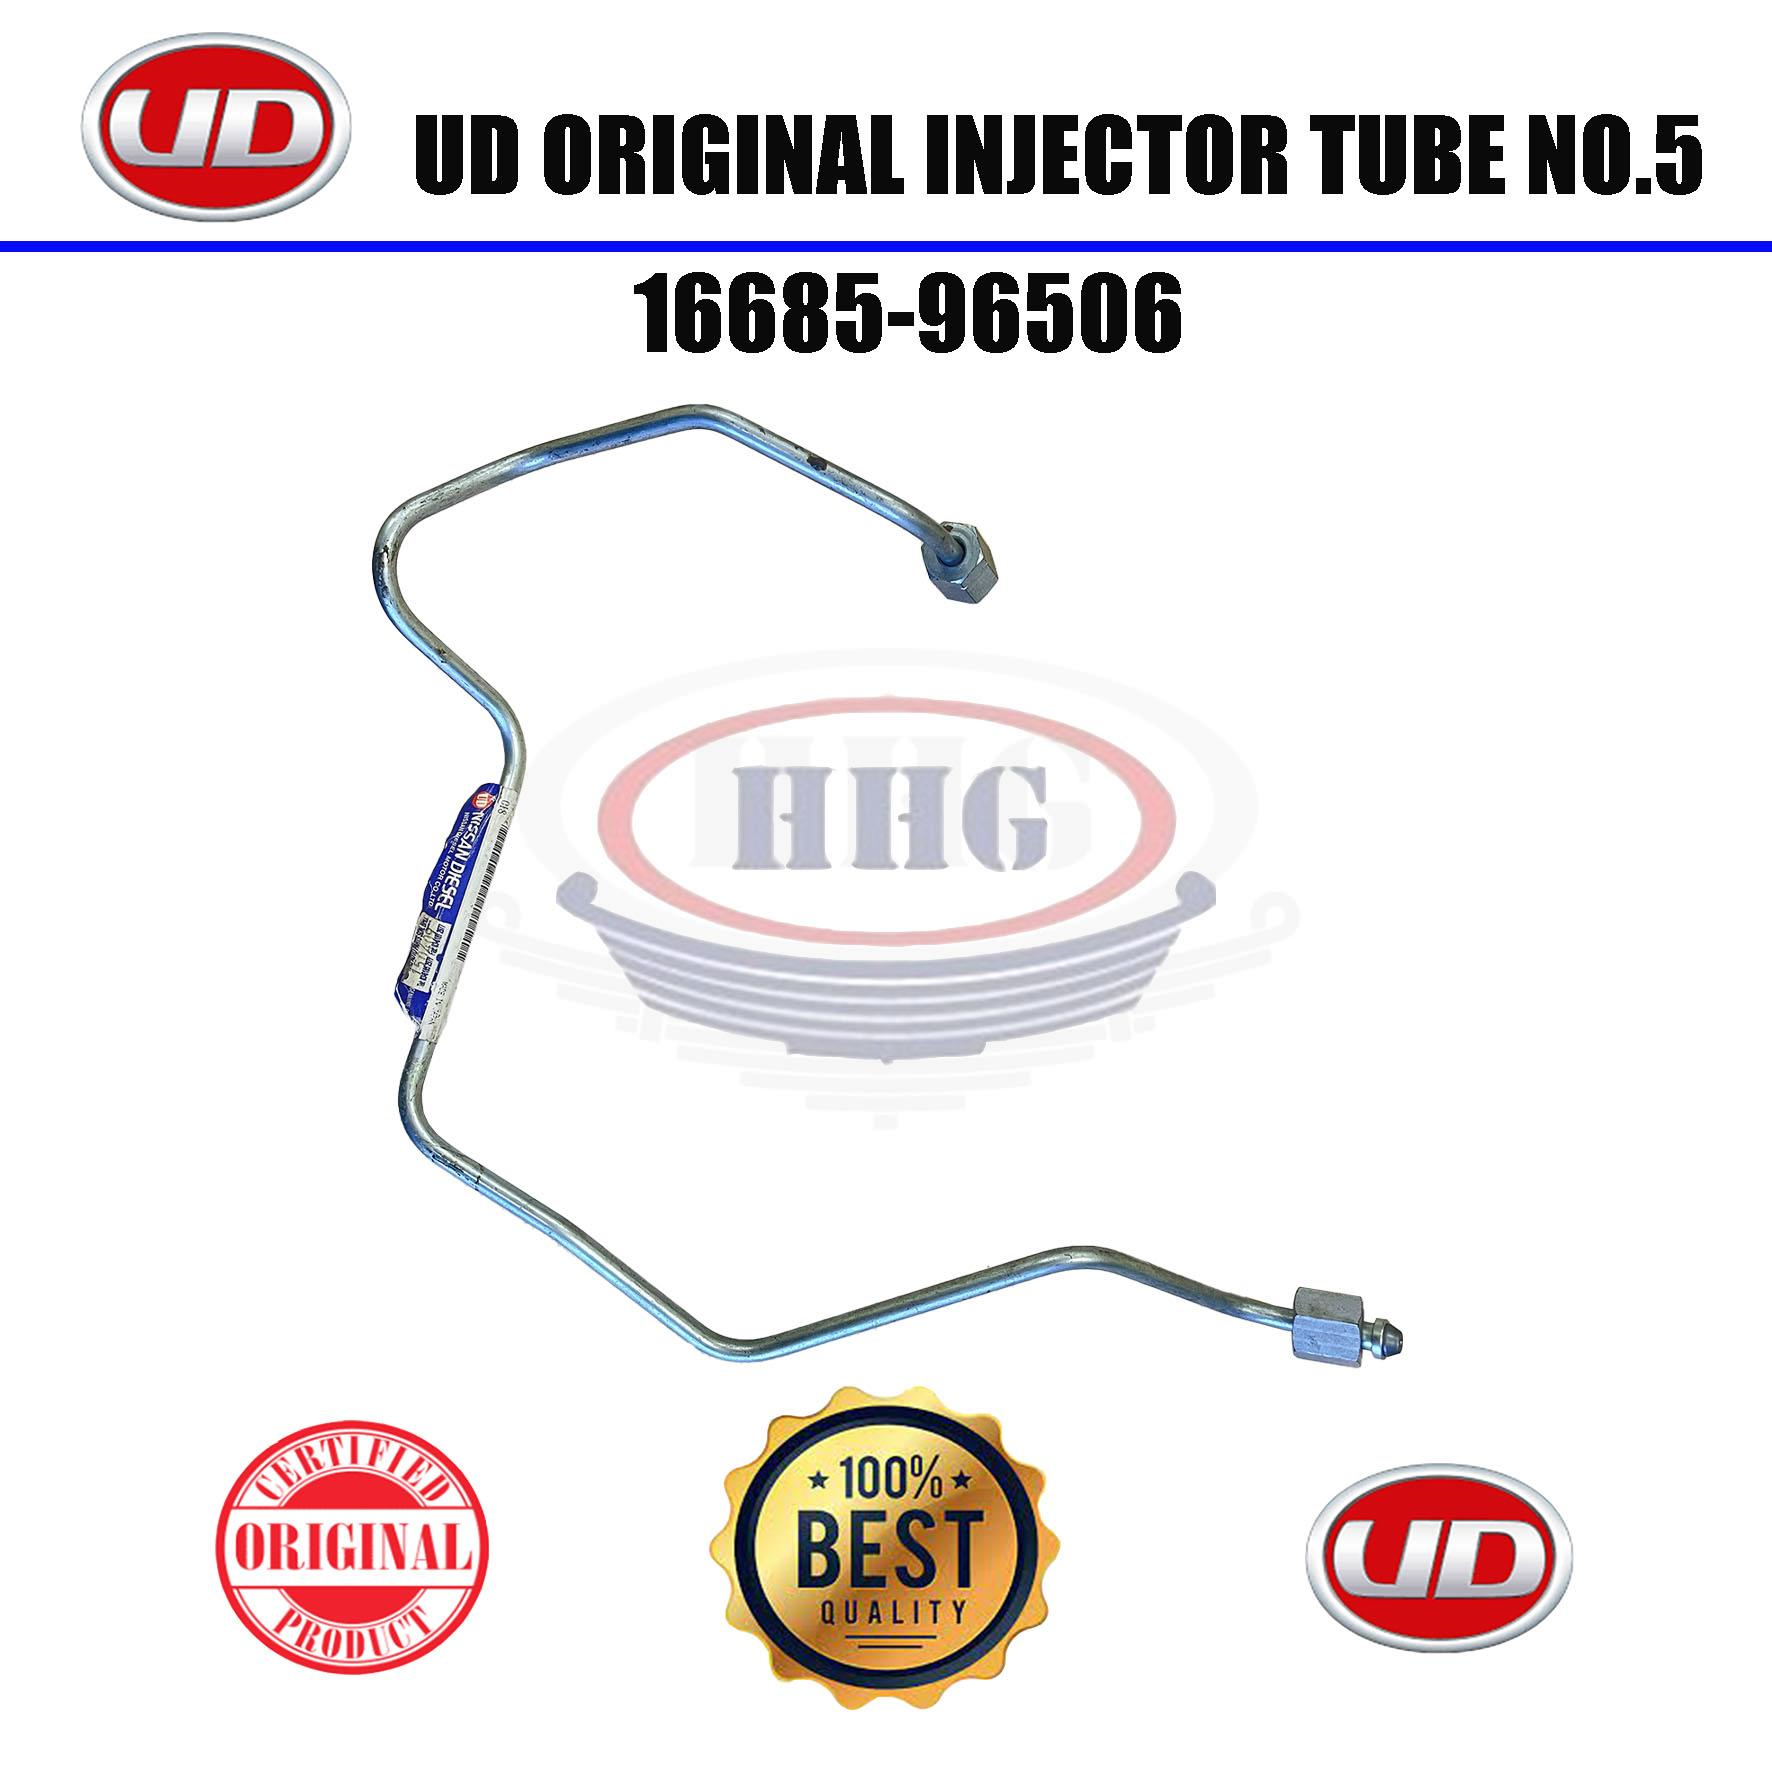 UD Original CKB457 Injector Tube No.5 (16685-96506)